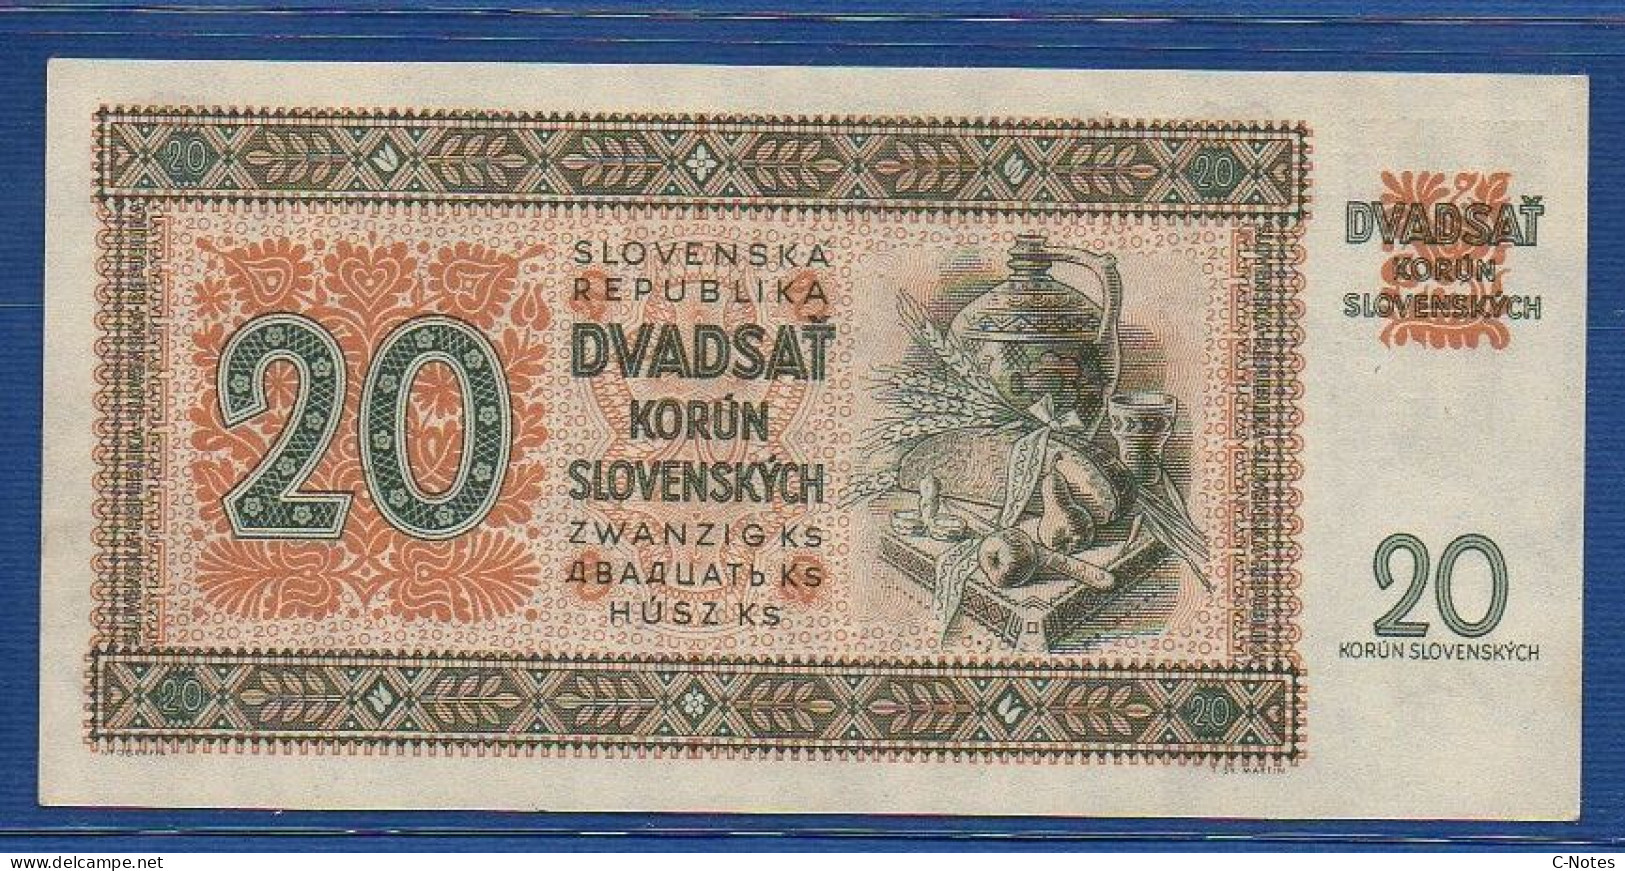 SLOVAKIA - P. 7a – 20 Korún Slovenských 1942 UNC- Serie Nz11 785452 - Slowakei